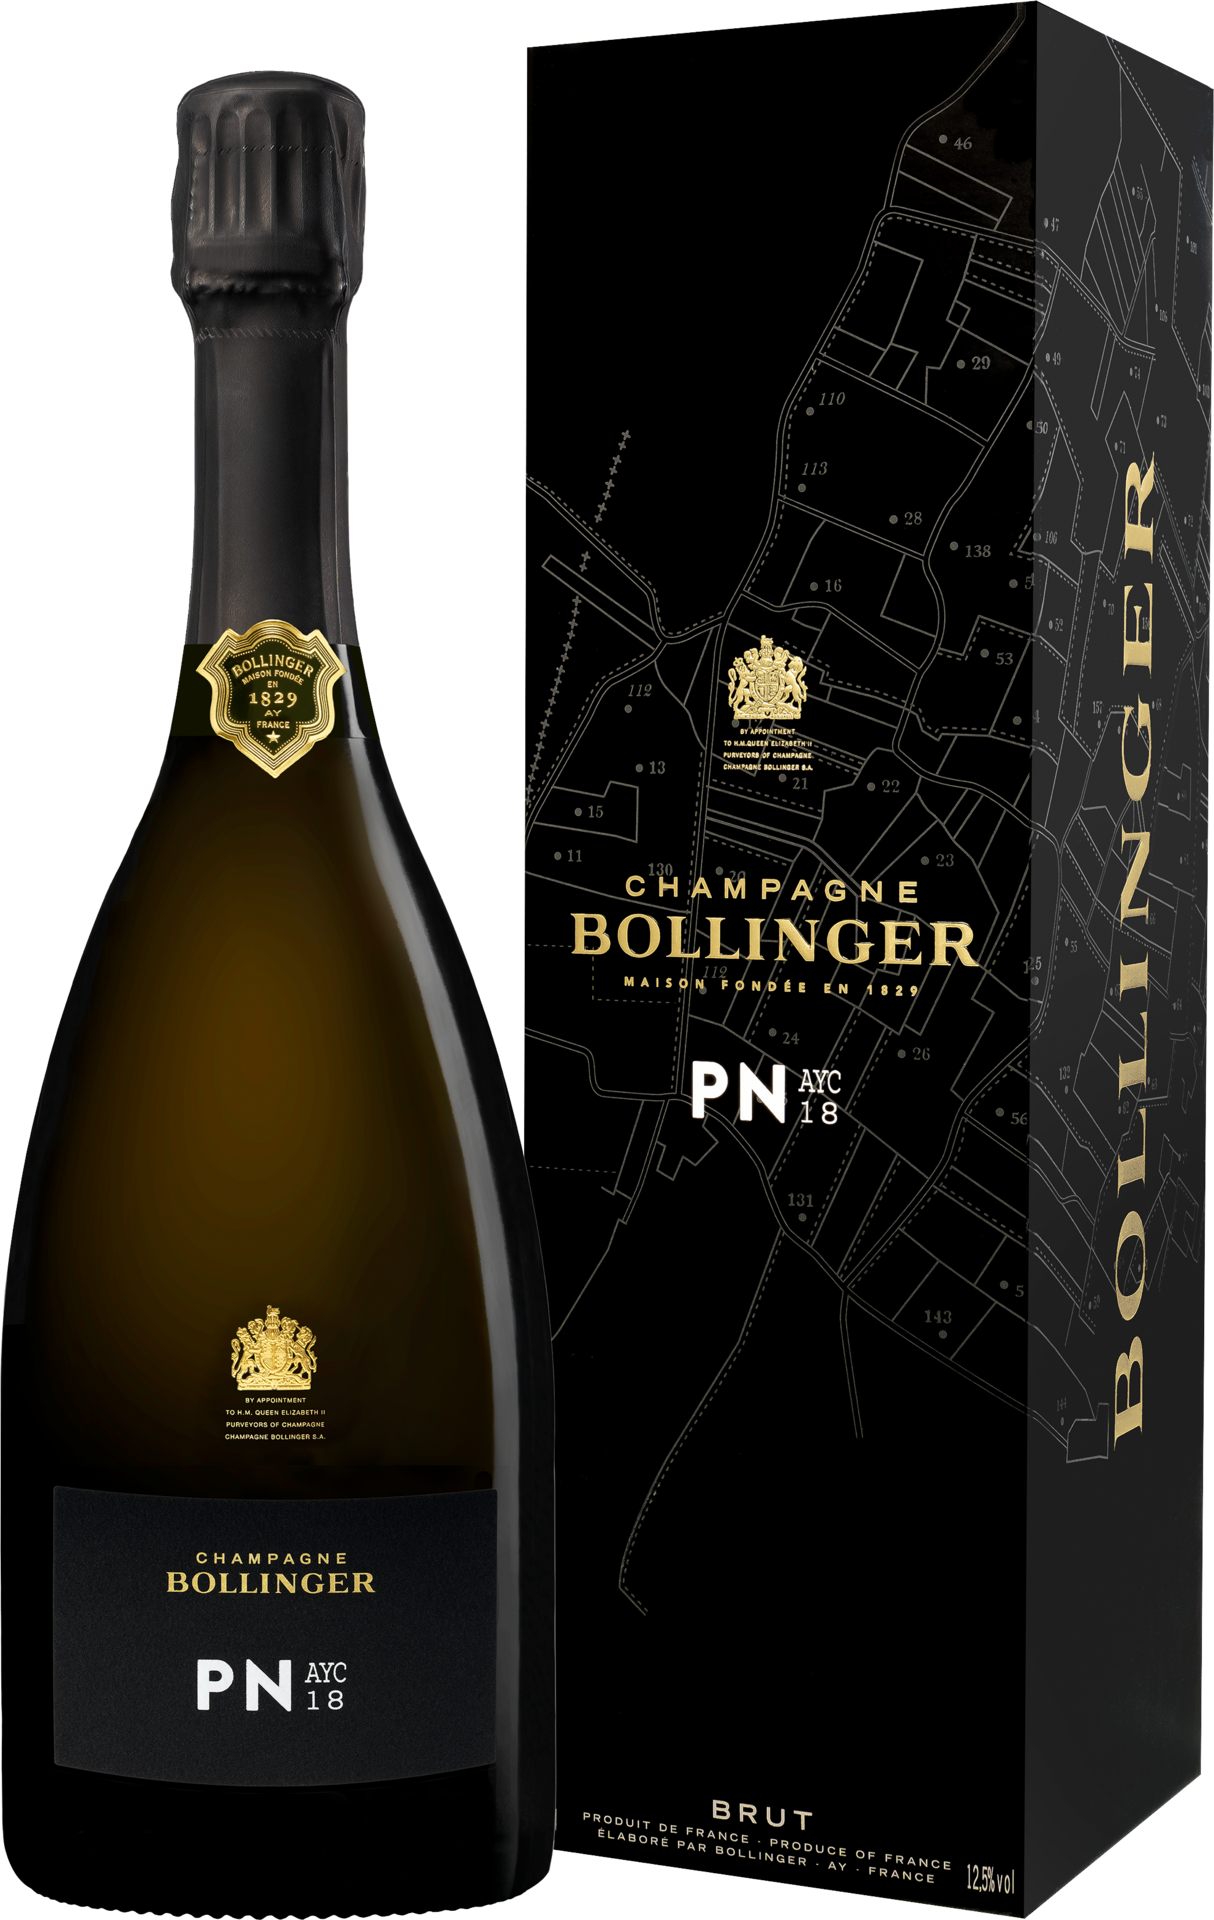 Champagne Bollinger PN AYC 18 in GP